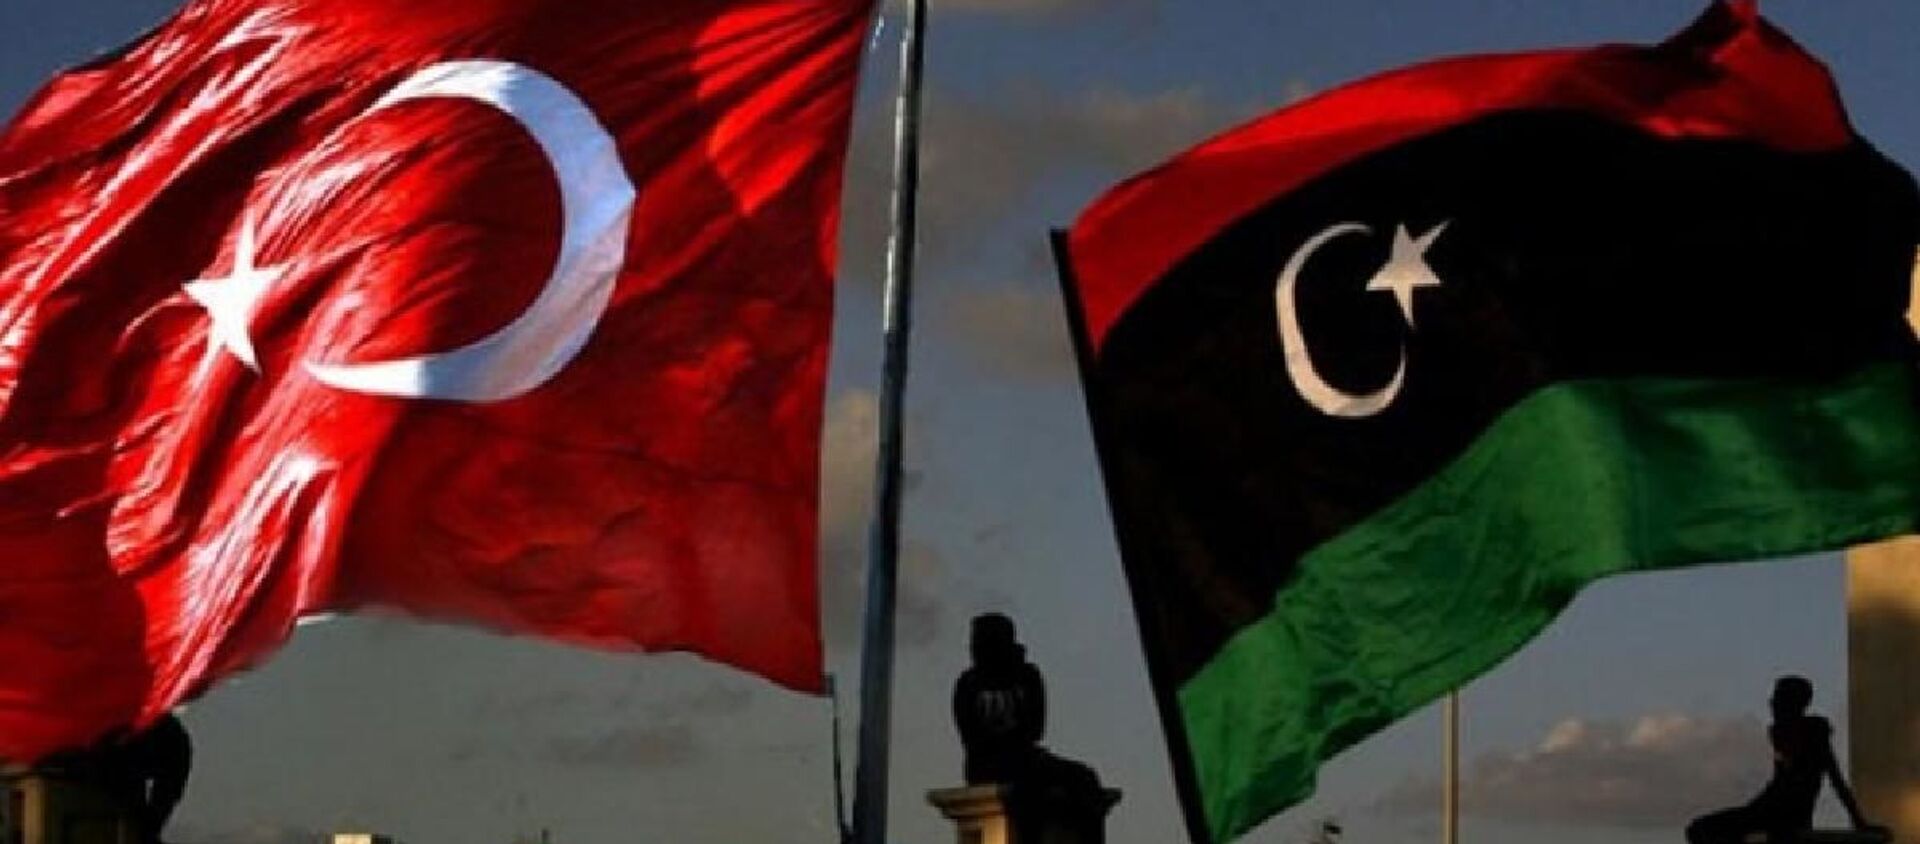 Türkiye-Libya bayrakları - Sputnik Türkiye, 1920, 05.04.2021